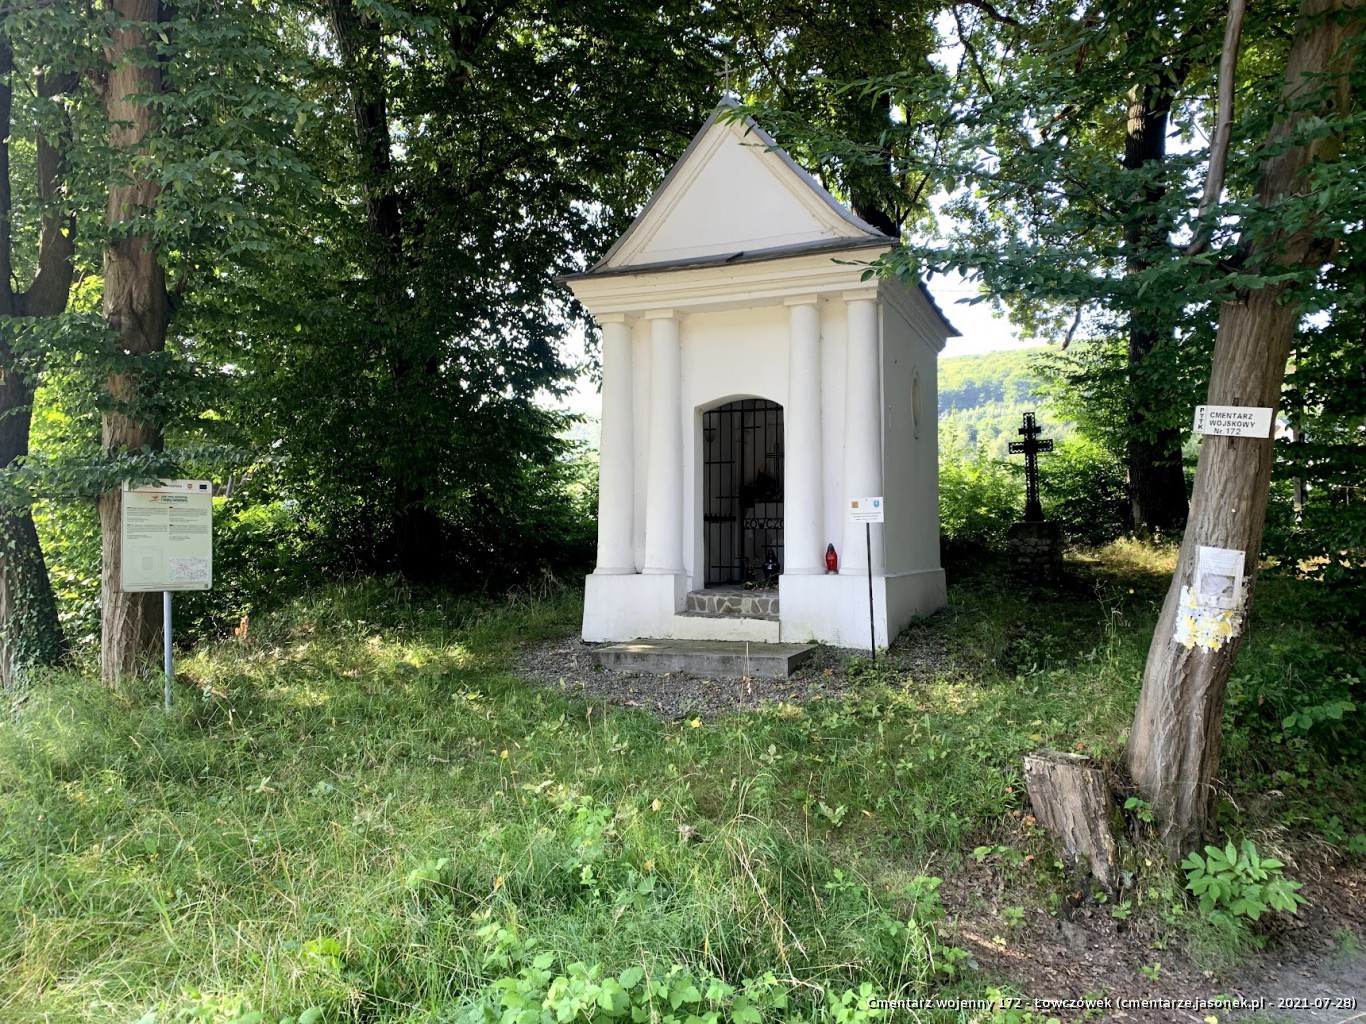 Cmentarz wojenny 172 - Łowczówek